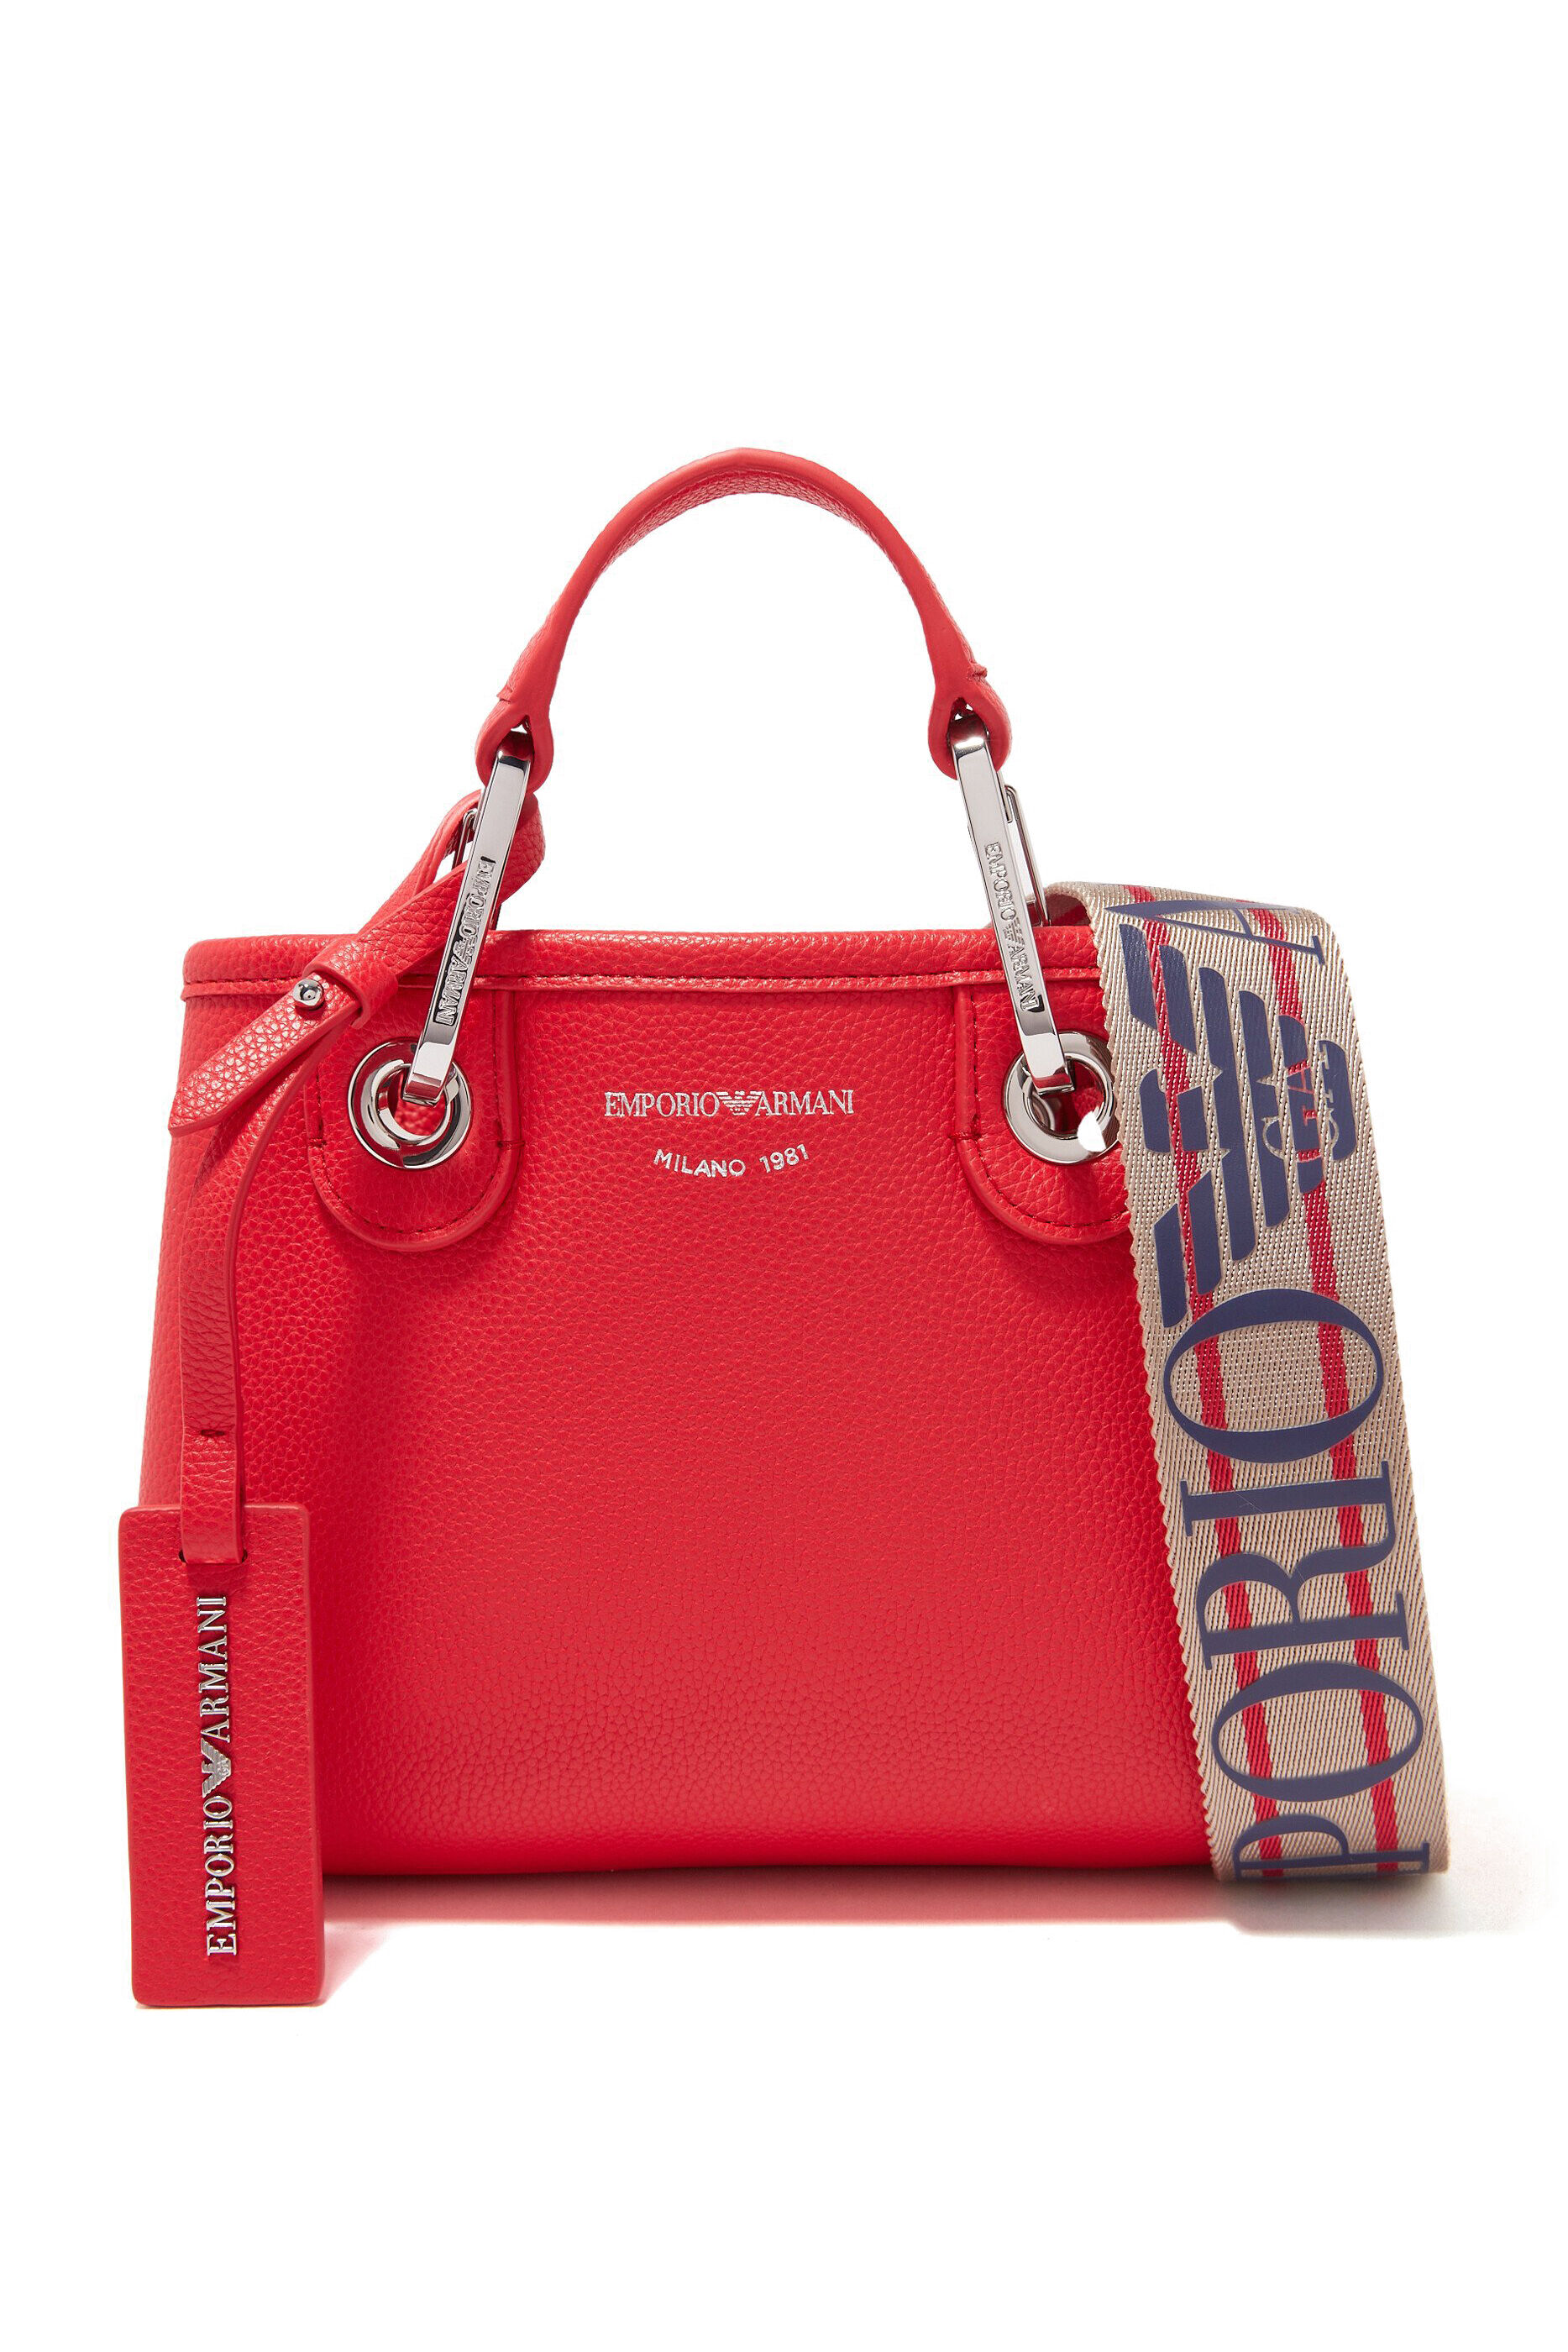 Armani Jeans 55 Large Shopper Shoulder Bag | Bags, Women handbags, Chic bags